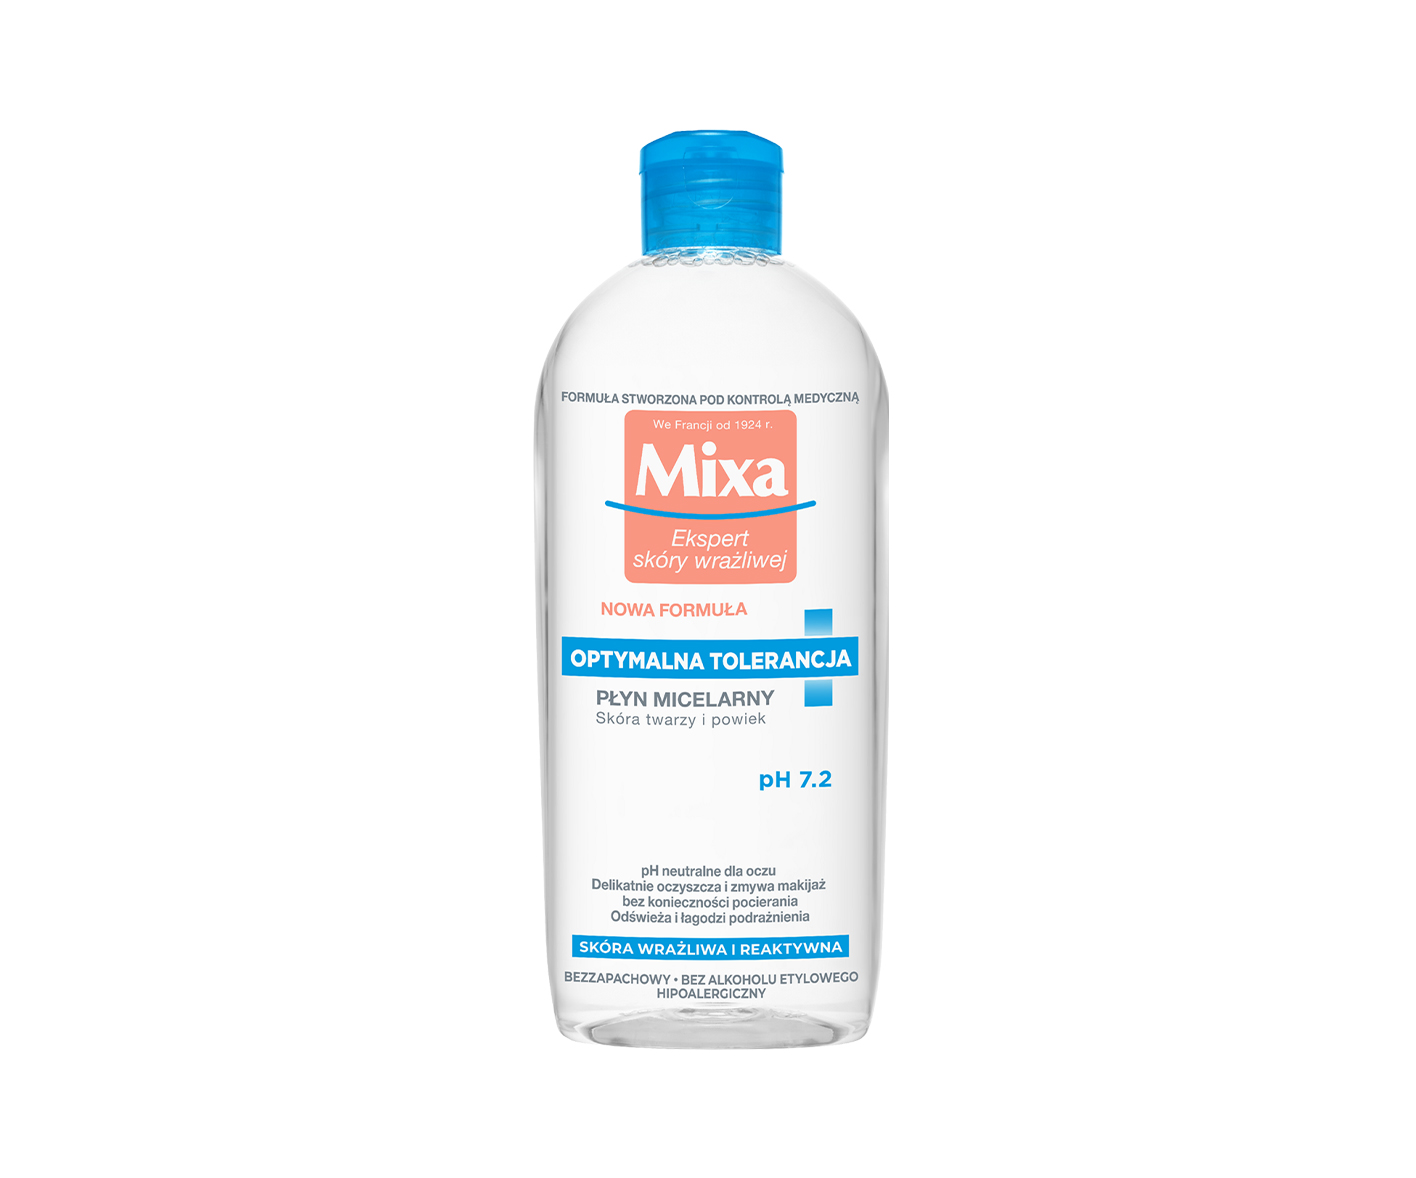 MIXA, Optimal Tolerance, Mizellenwasser für Gesicht und Augenlider